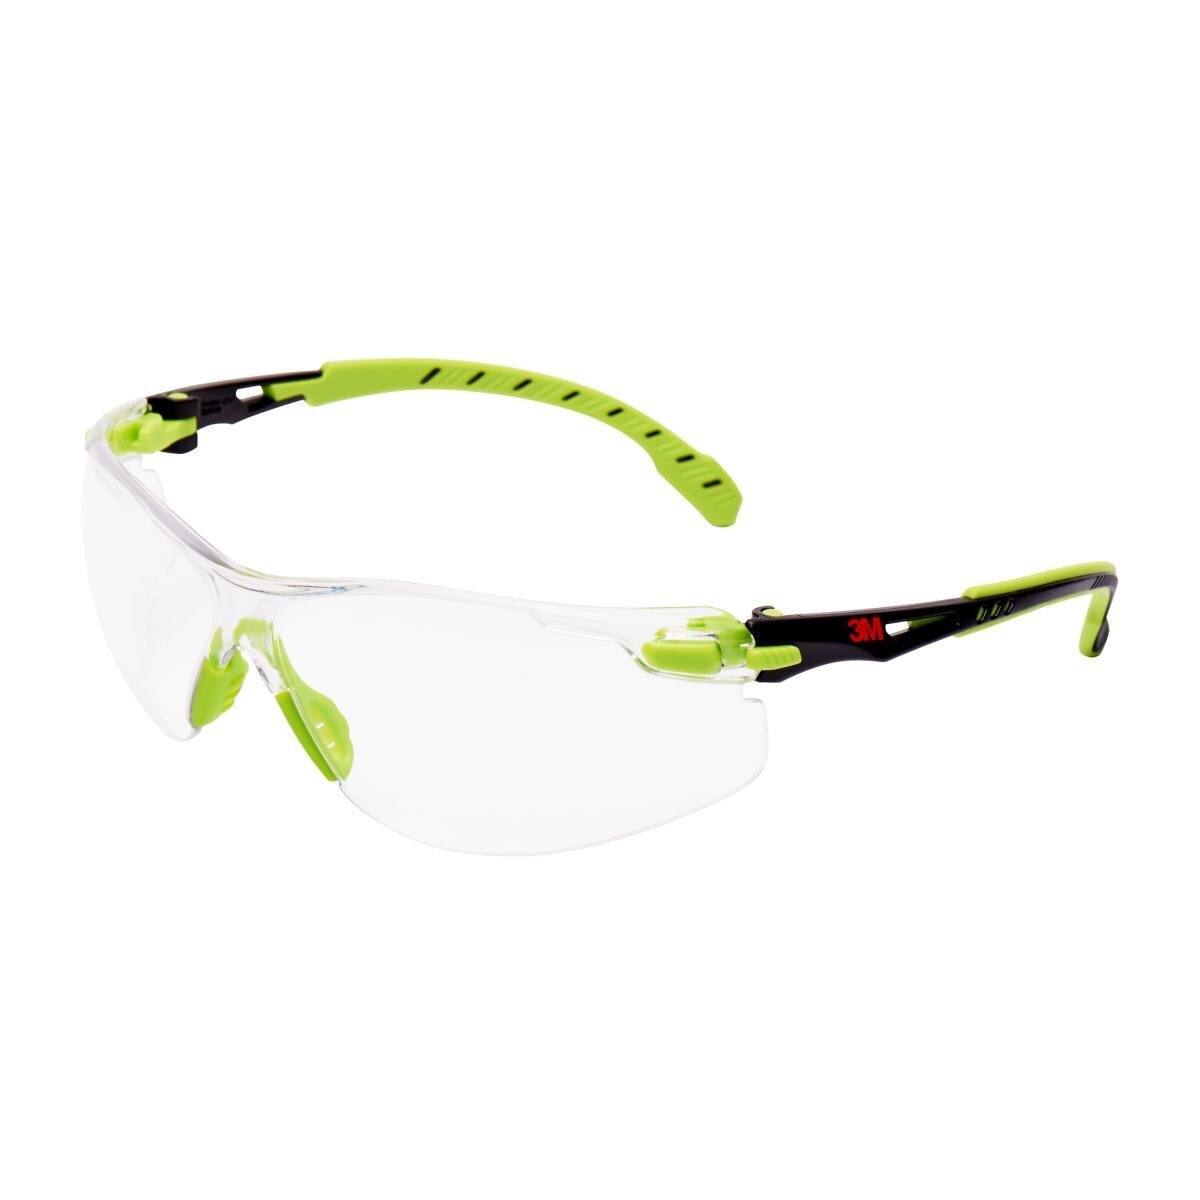 3M Solus 1000 veiligheidsbril, groen/zwarte veren, Scotchgard anticondens/antikrascoating (K